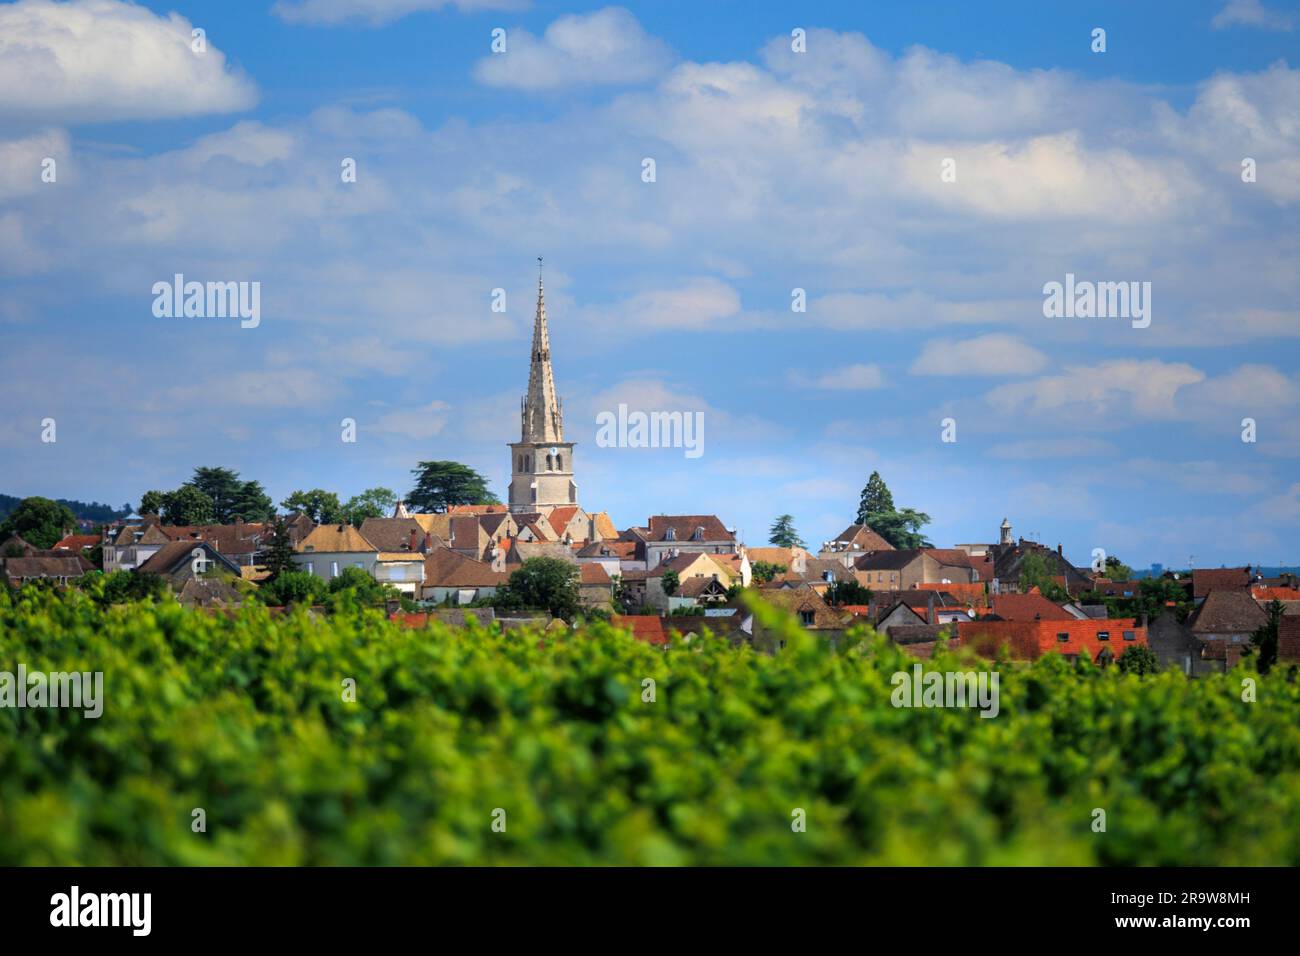 Auf der anderen Seite der Weinberge Meursault Beaune Cote-d-or France Stockfoto